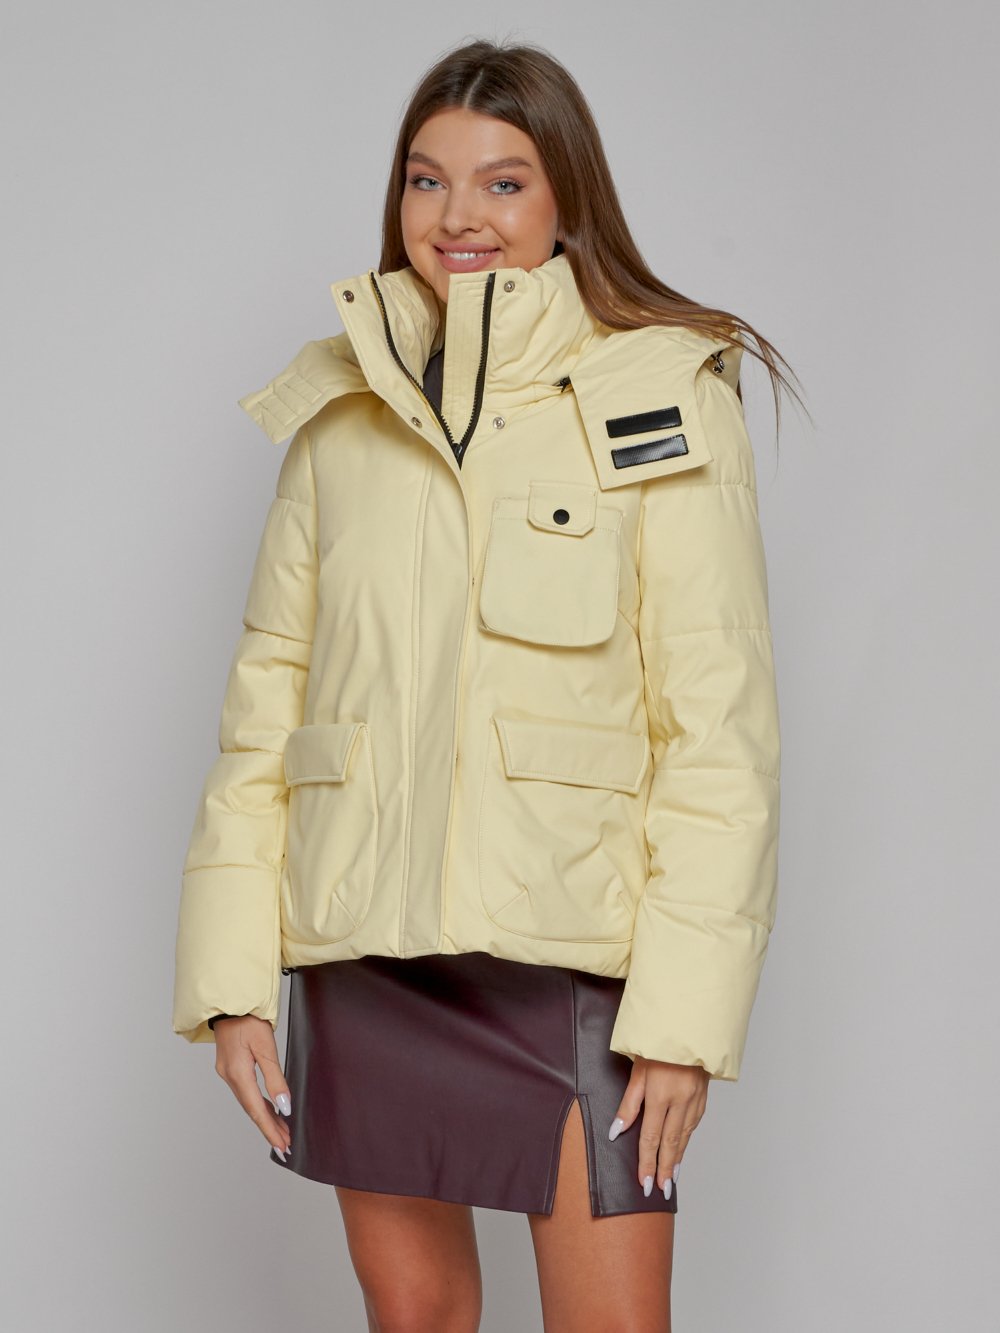 Купить куртку зимнюю оптом от производителя недорого в Москве 52413SJ 1